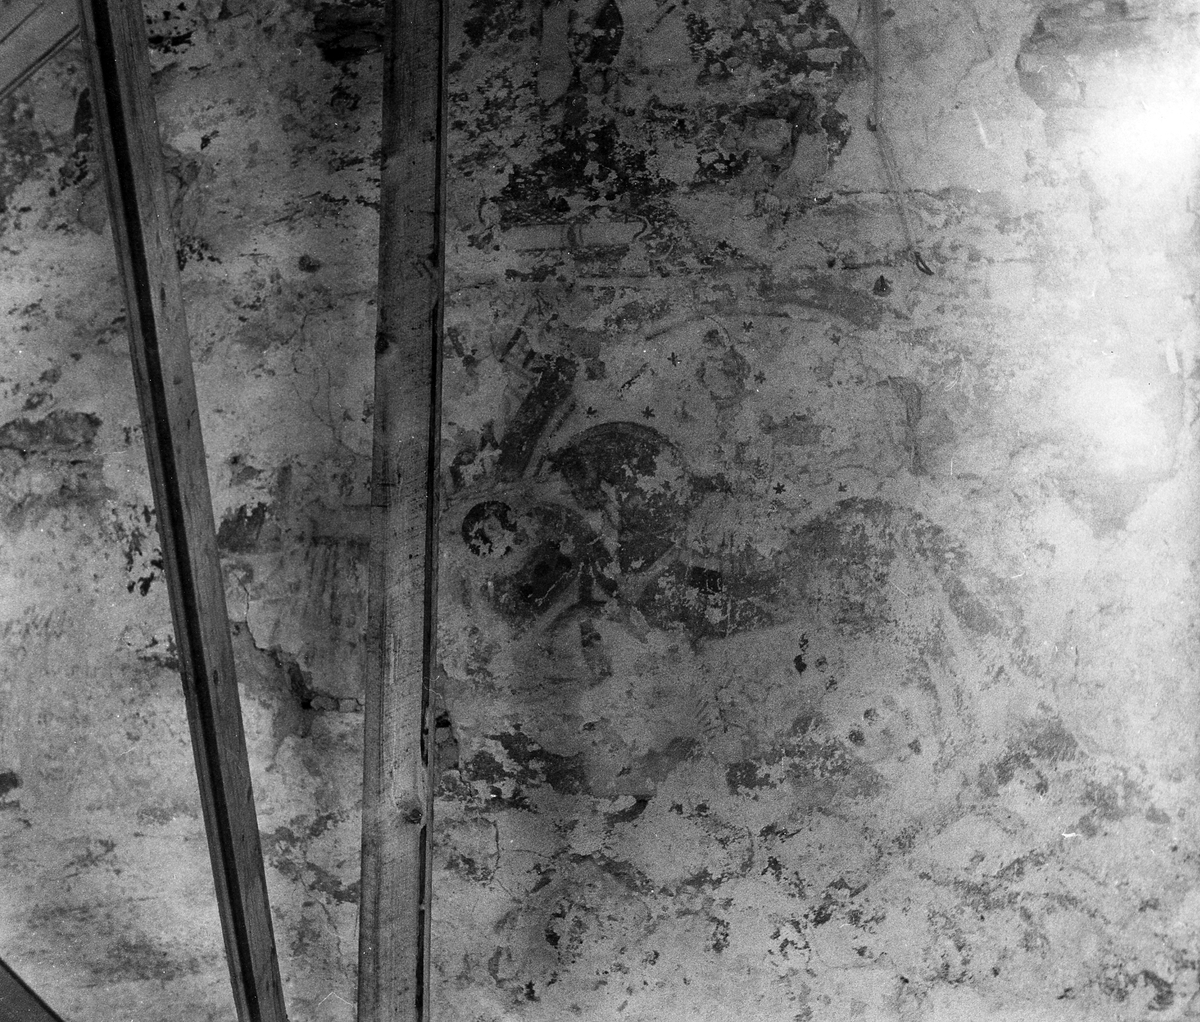 Stråvalla sn.
Stråvalla kyrka efter renoveringen juni 1964.
Foto 1, Norra långhusväggen, detalj bakom predikstolen, efter restaureringen. 
Foto 2, Södra långhusväggen, detalj av målning omedelbart öster om läktarbröstningen och nedanför taklisten.
Foto 3 Del av kalkmålning på flätbandsfris, norra långhusväggen.
Foto 4 Norra långhusväggen, del av kalkmålning i arkad på flätbandsfris.
Foto 5 Norra långhusväggen, nedre delen av kalkmålning i arkad flätbandsfris.
Foto 6, Norra långhusväggen, del av kalkmålning med mittbård och underliggande arkadbåge.